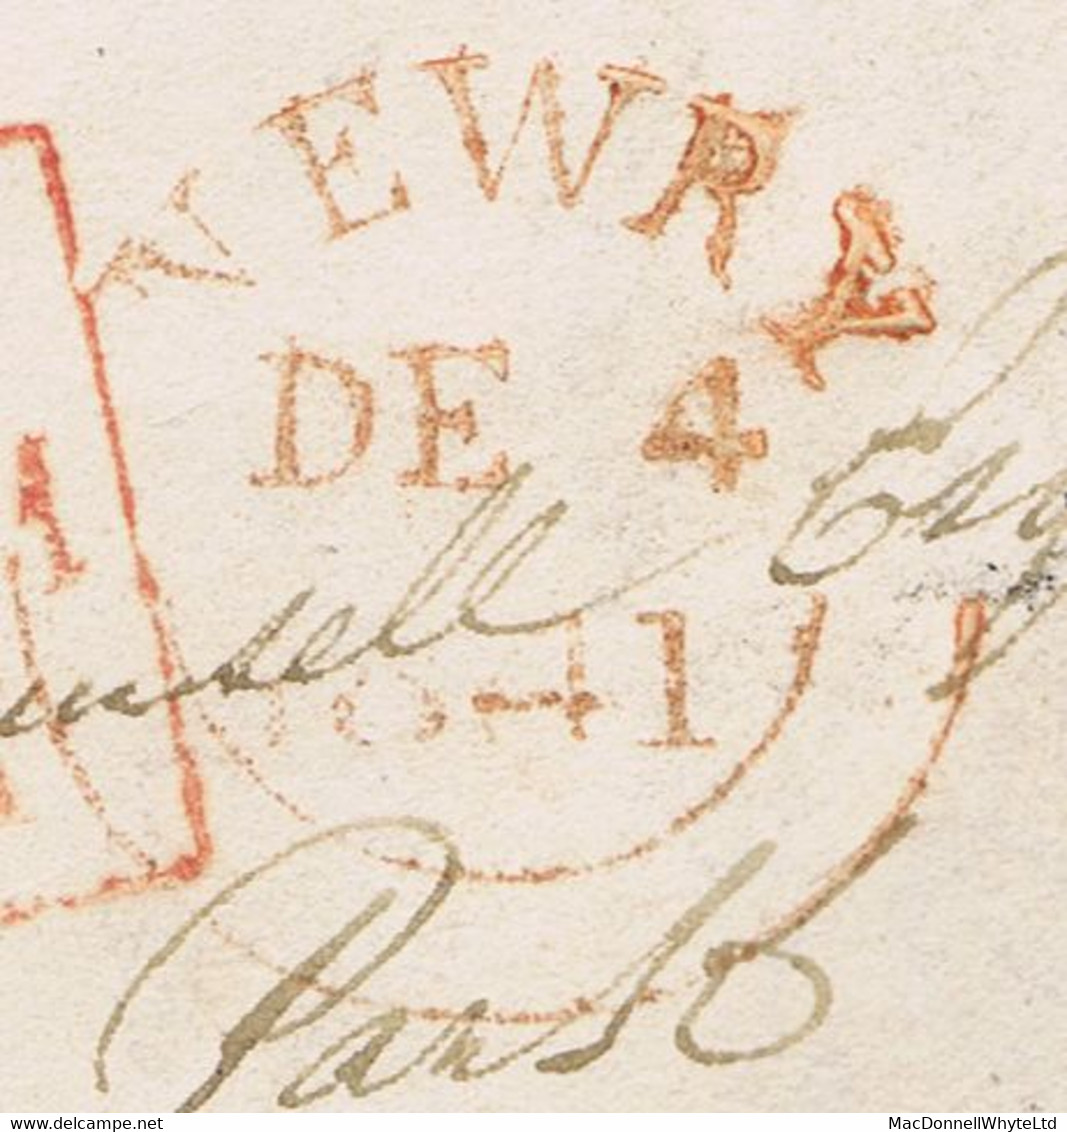 Ireland Down Uniform Penny Post Rate 1841 Letter To Celbridge Prepaid "1" With Red NEWRY DE 4 1841 Cds - Préphilatélie